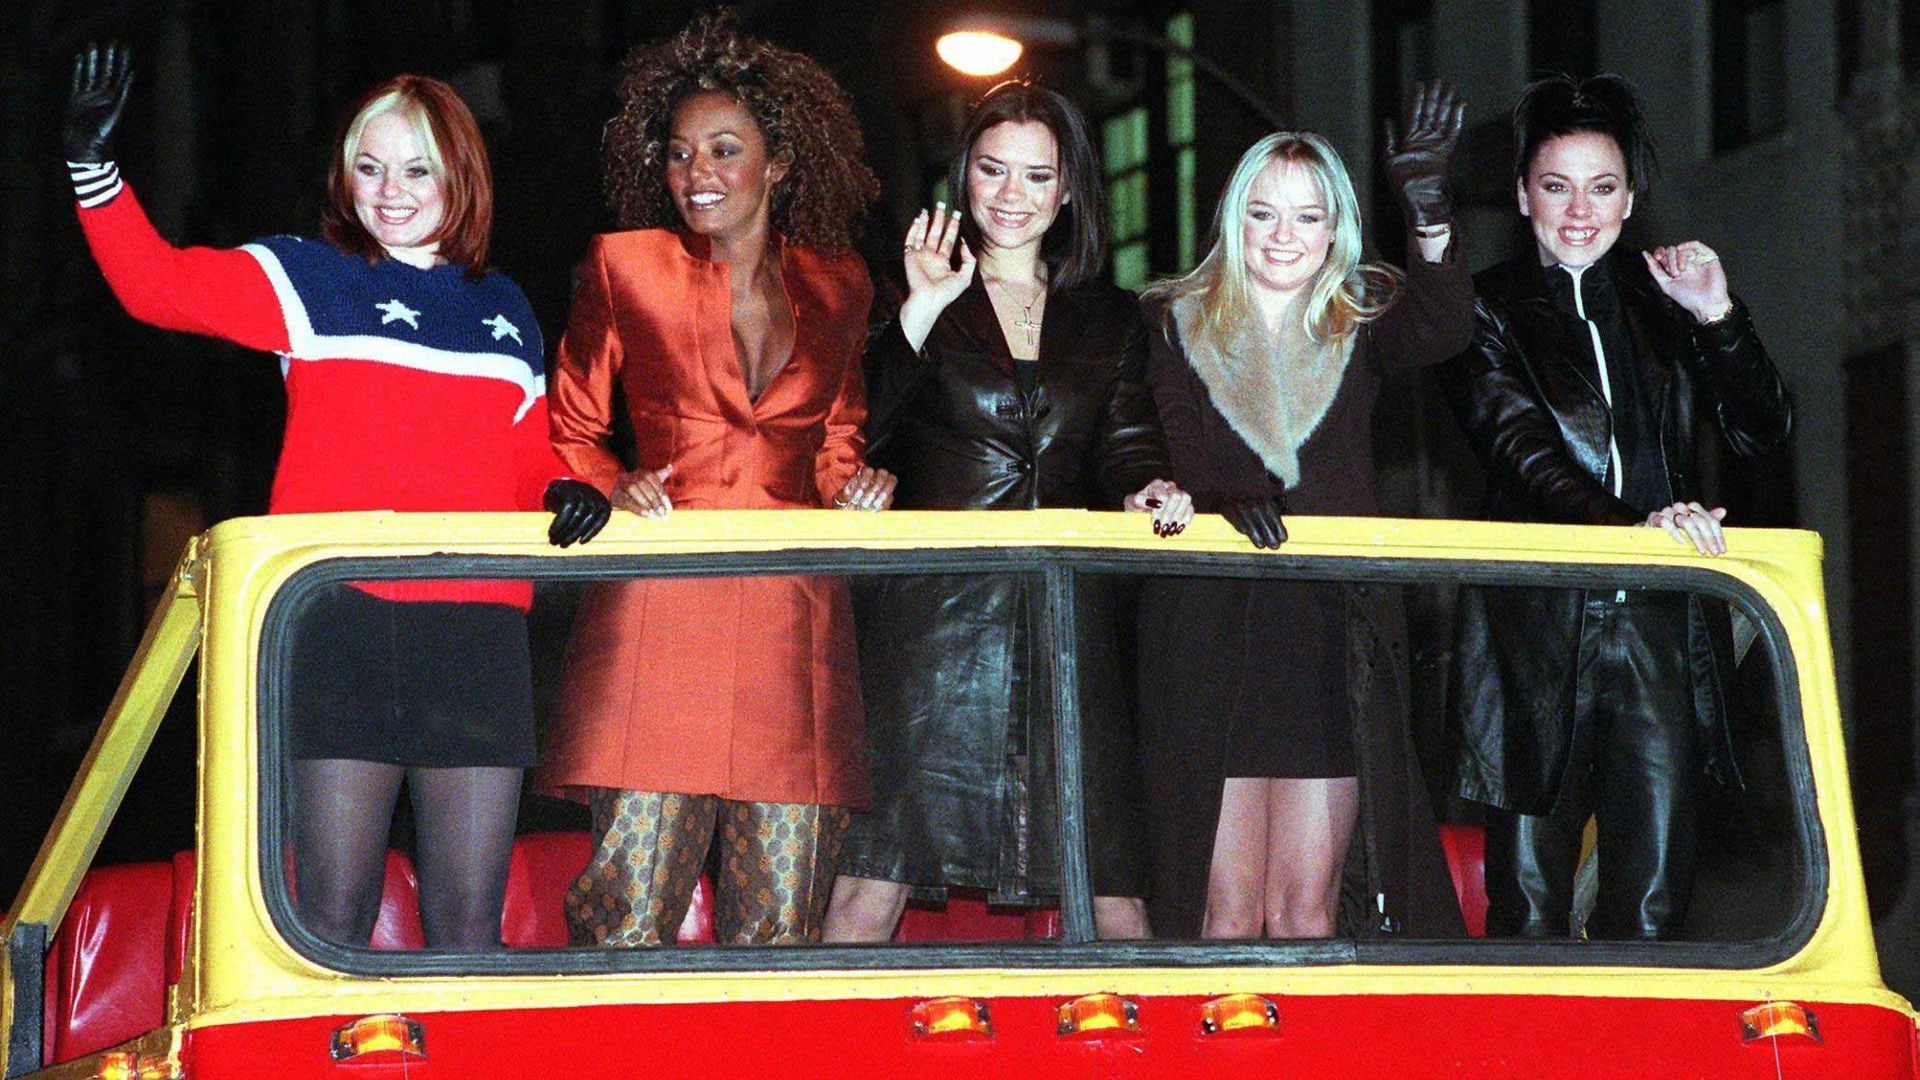 Spice Girls movie premiere